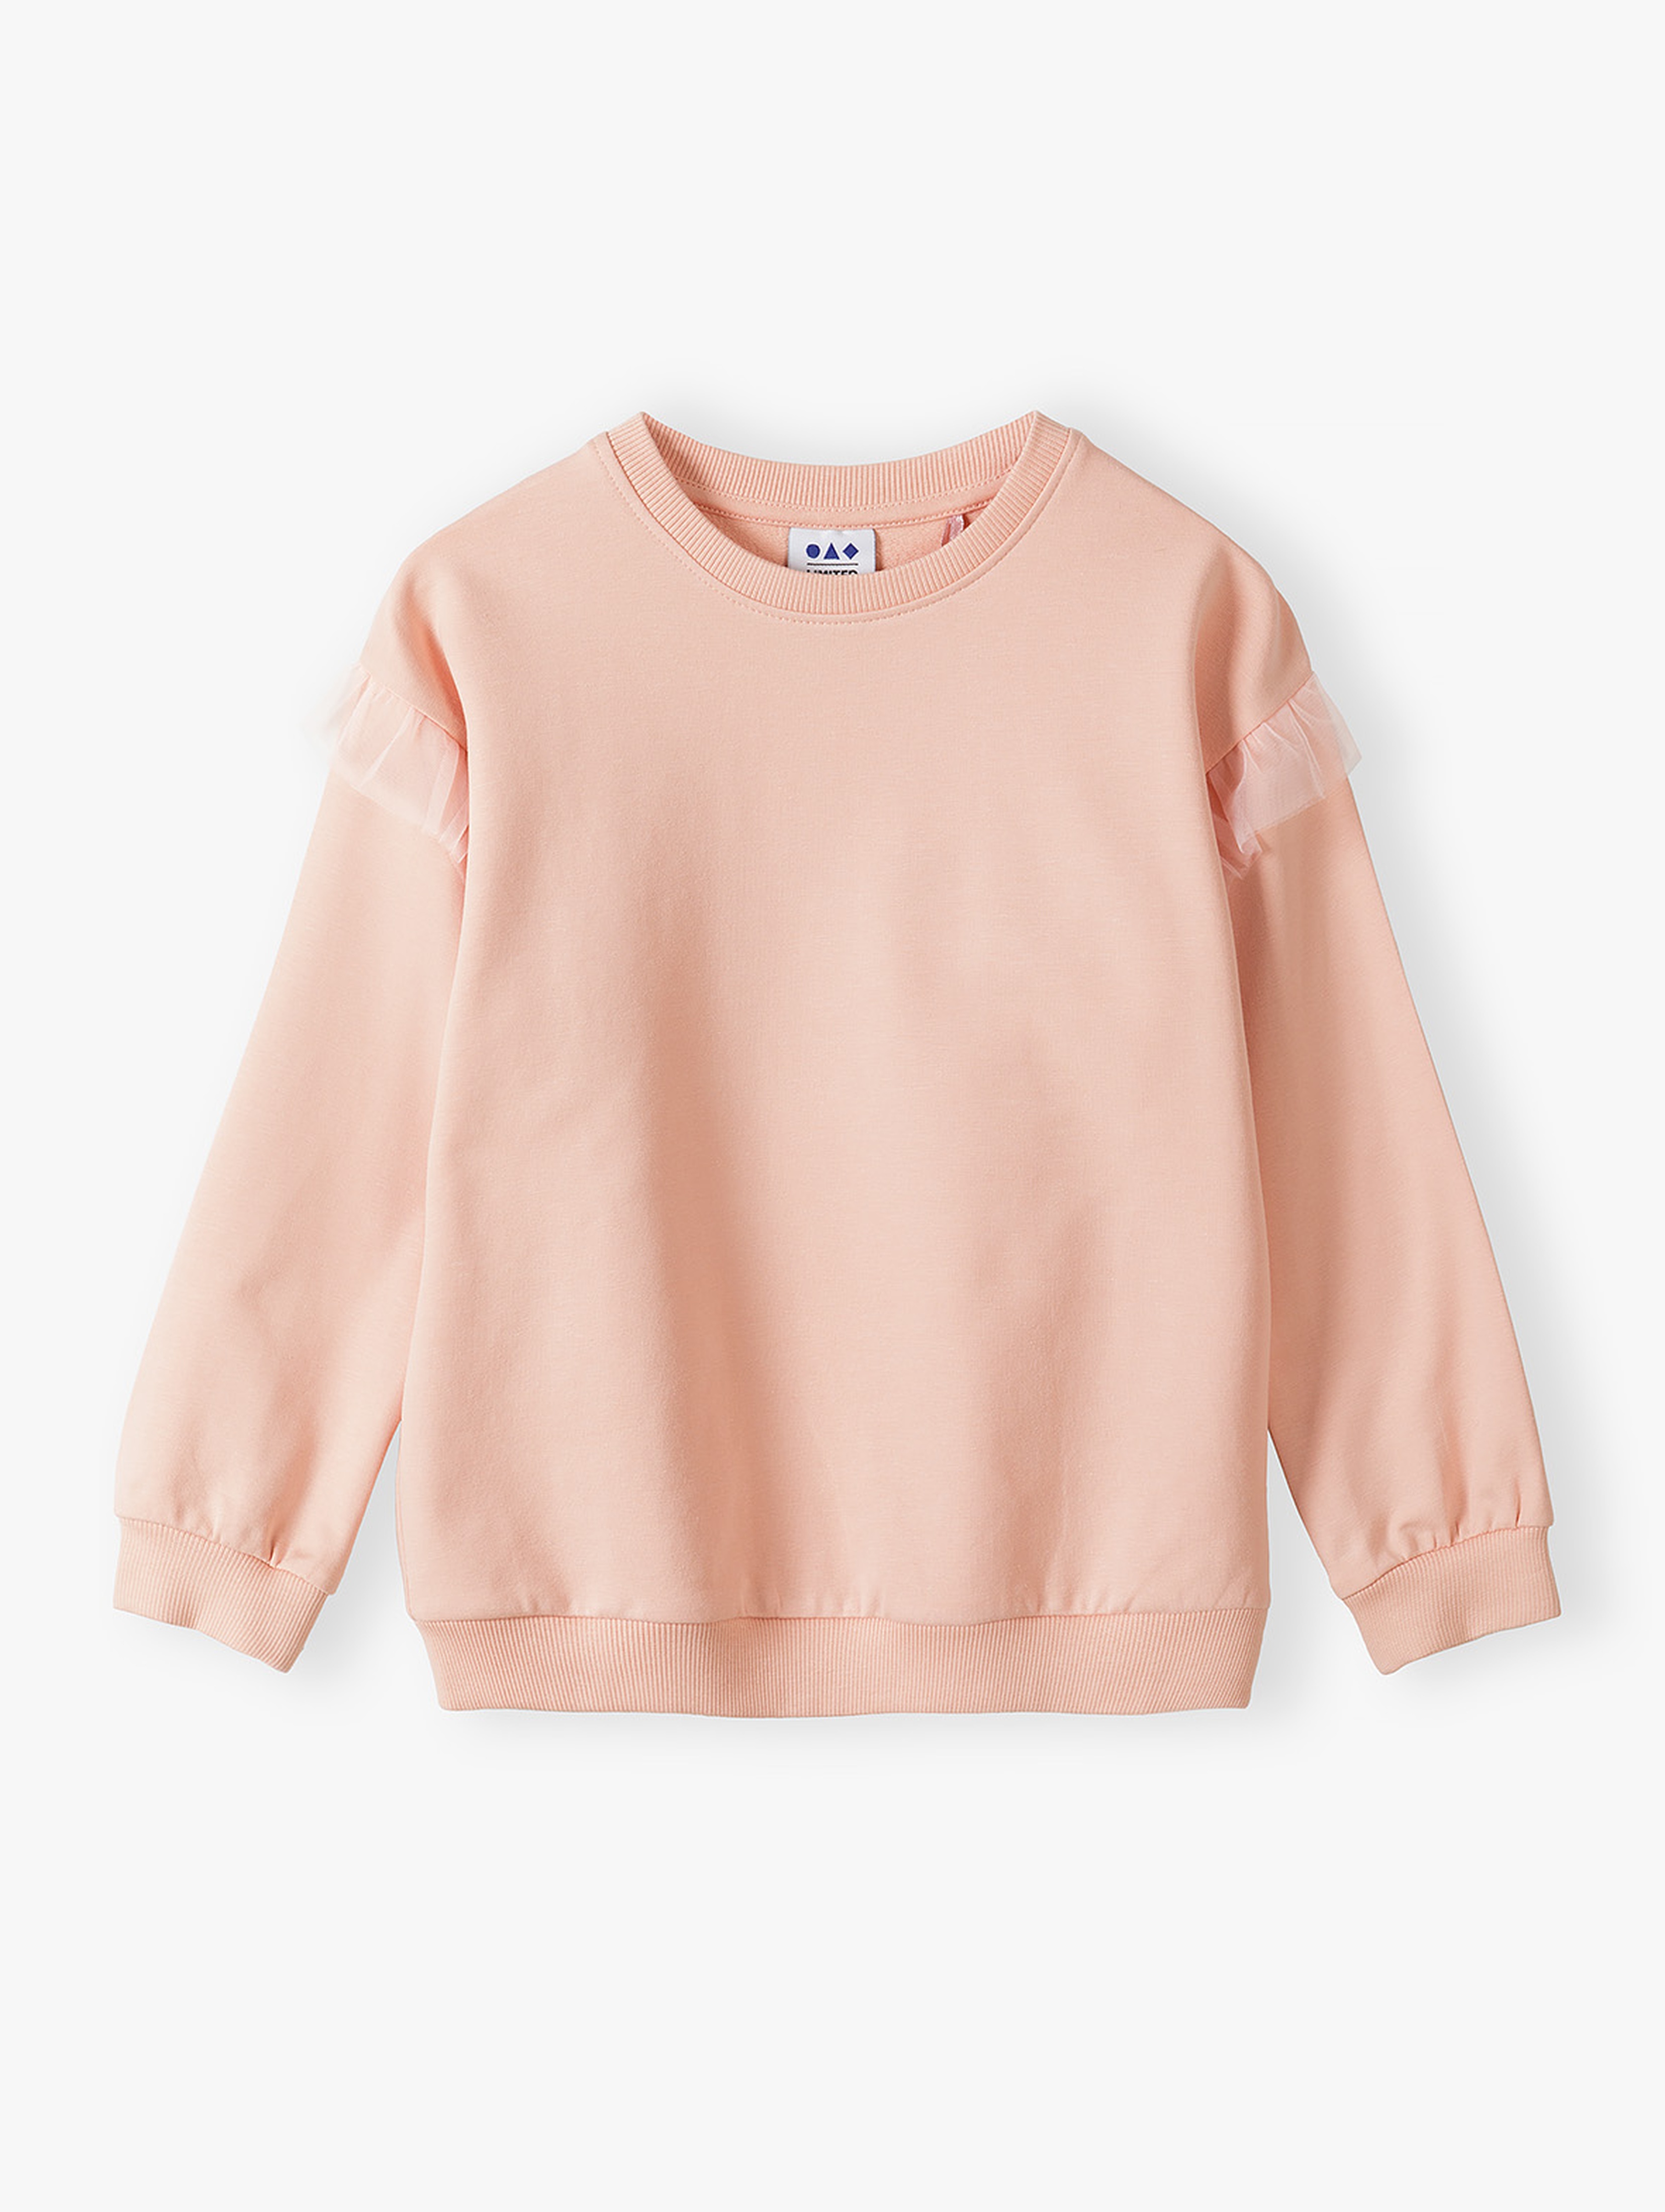 Brzoskwiniowa bluza dresowa dla małej dziewczynki - Limited Edition